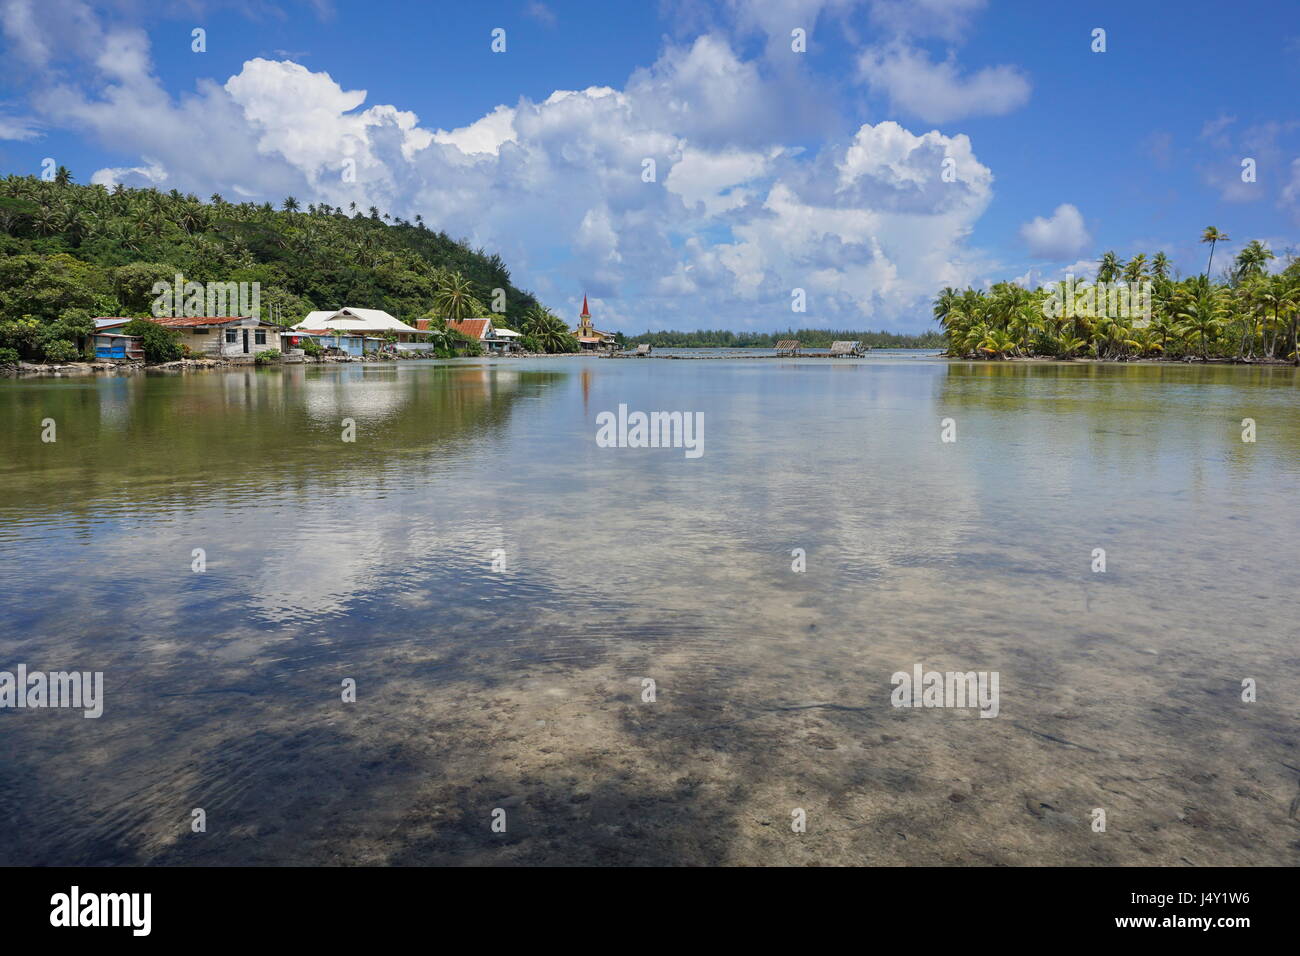 Französisch-Polynesien Huahine island Küstenlandschaft, Maeva Dorf am Ufer des Salzwasser See Fauna Nui, Südpazifik Stockfoto